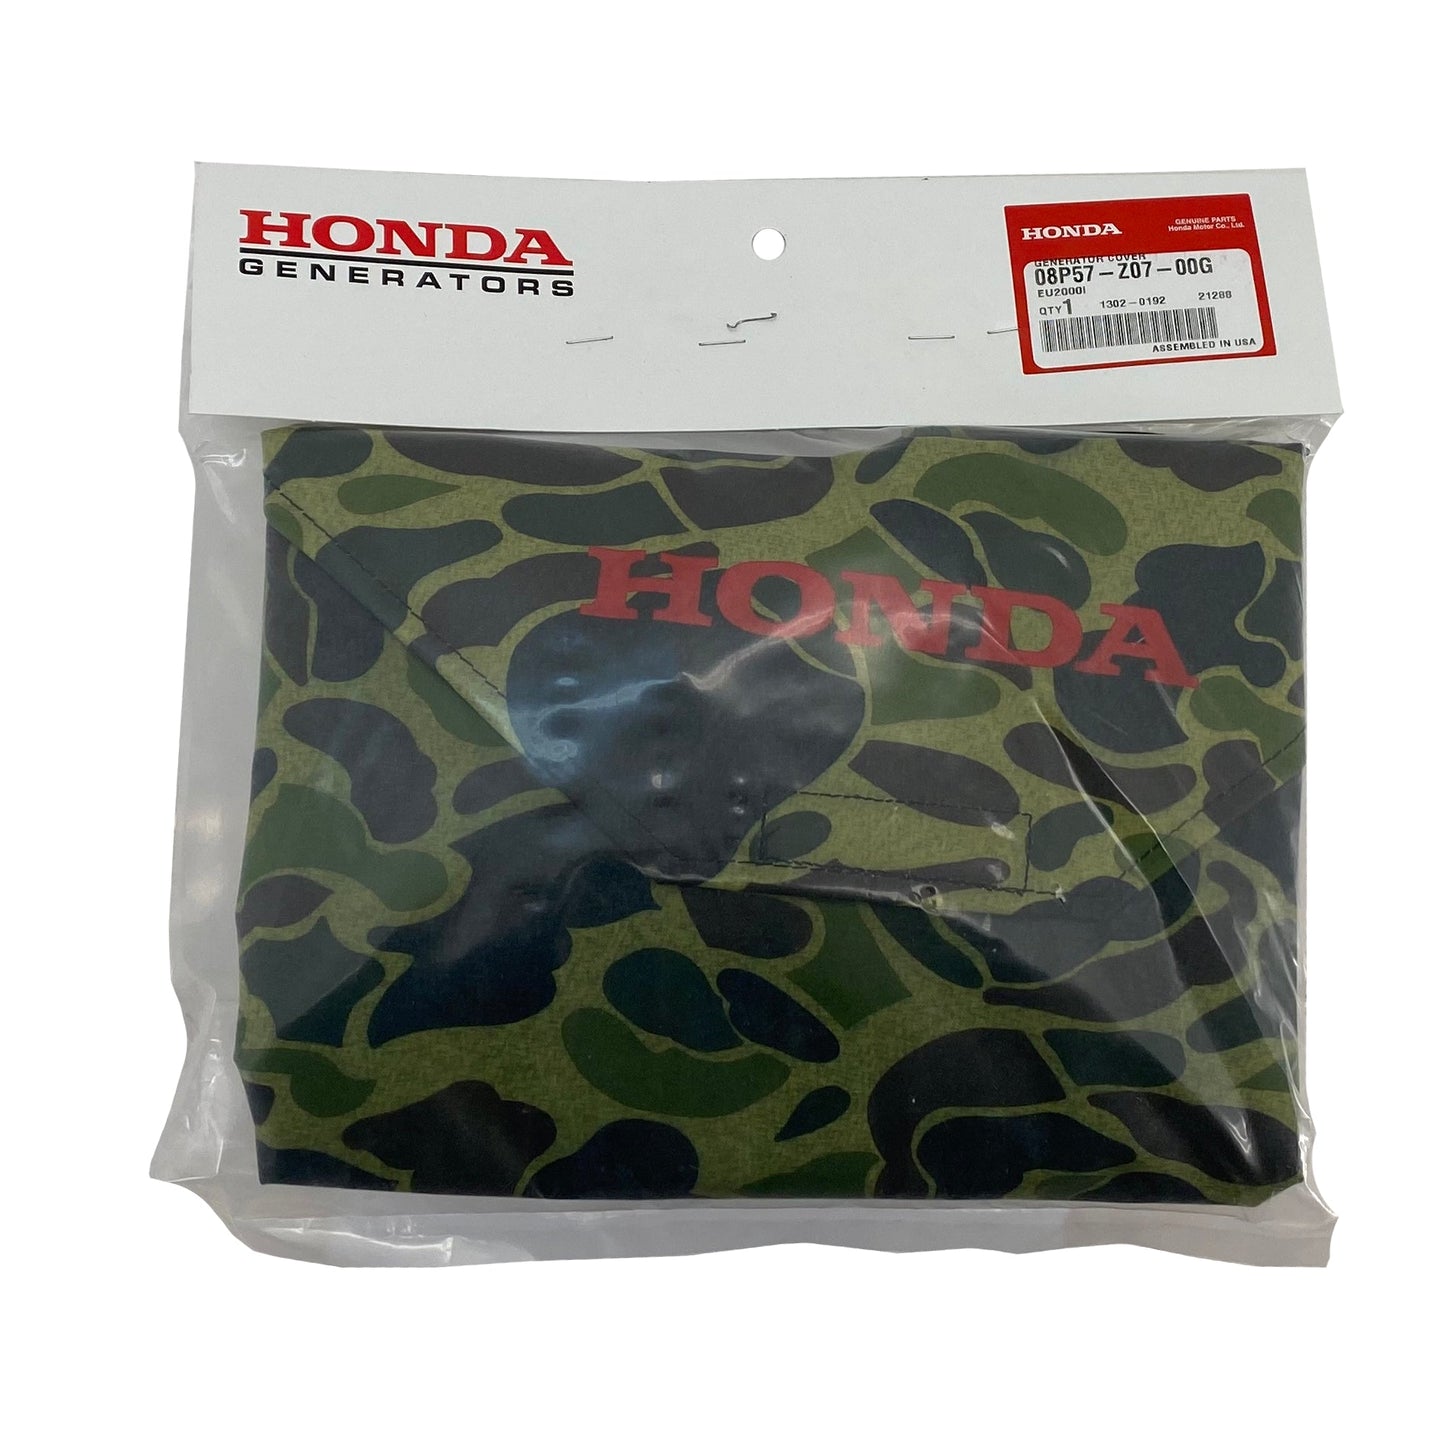 Honda Original Equipment Camouflage Cover EU2 - 08P57-Z07-00G